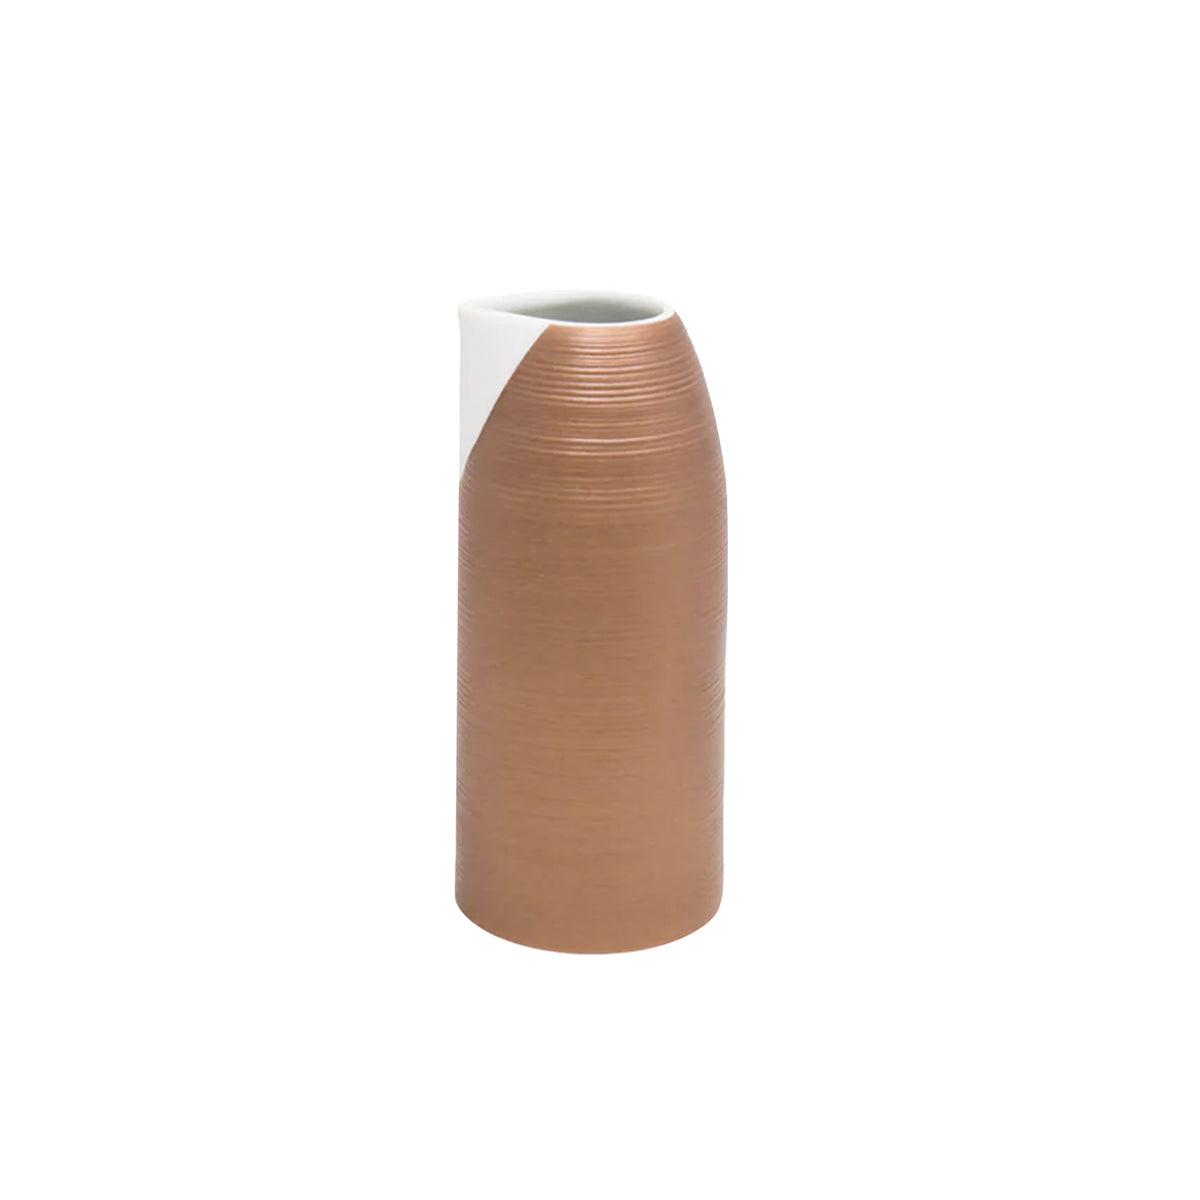 HEMISPHERE Pink Metallic - Sake jug, large